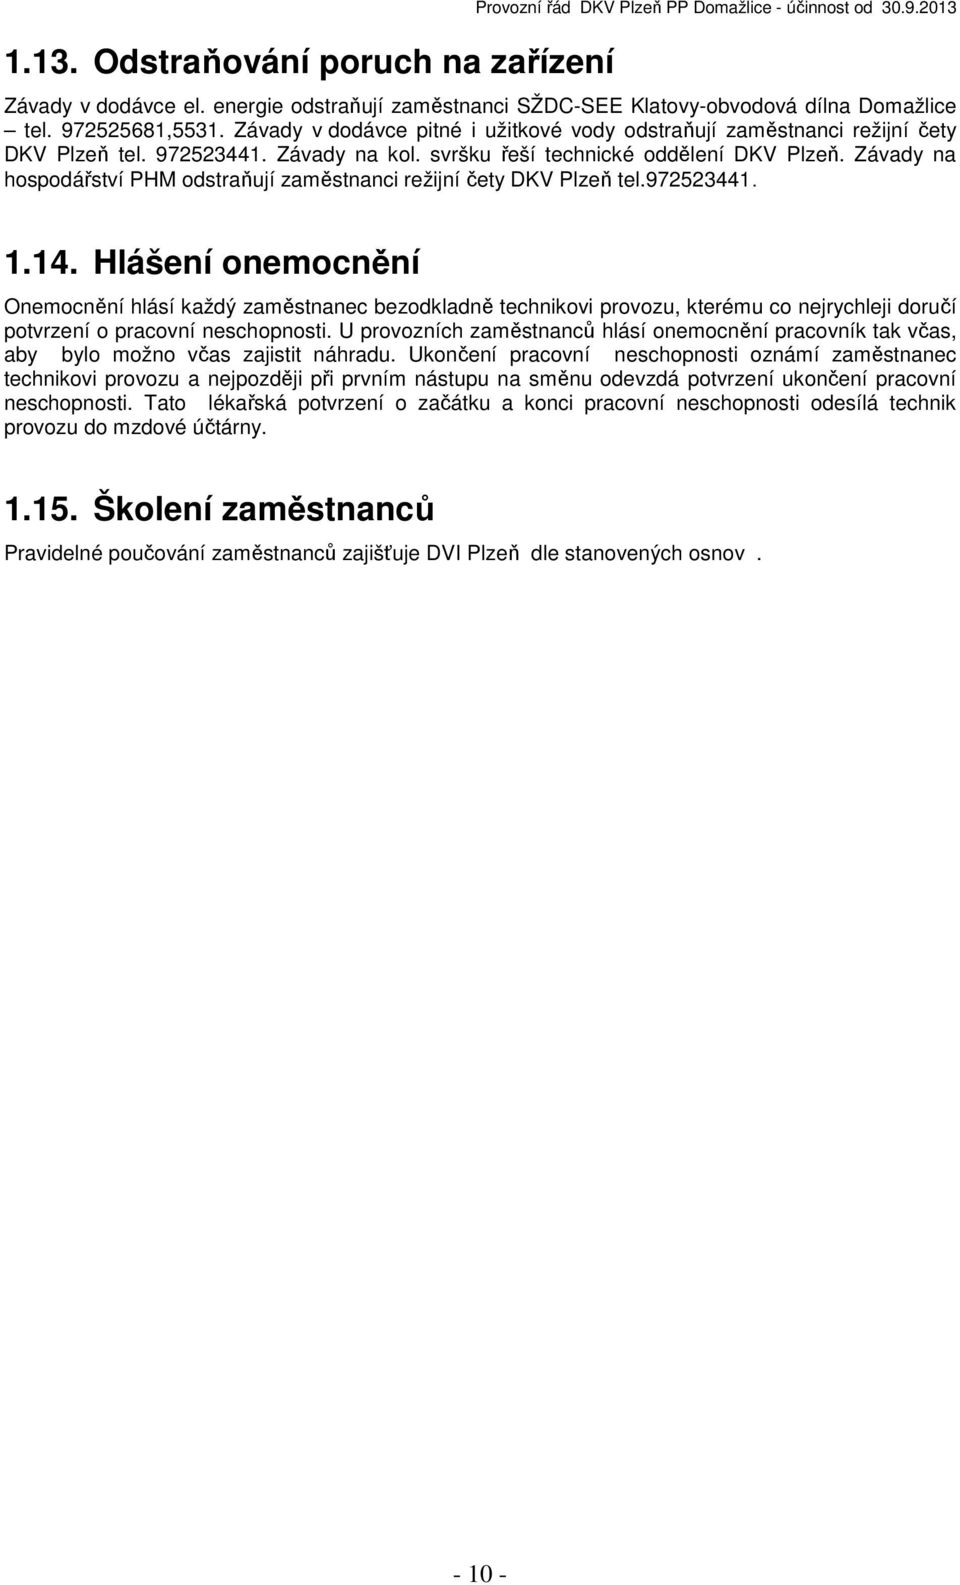 Závady na hospodářství PHM odstraňují zaměstnanci režijní čety DKV Plzeň tel.972523441. 1.14.